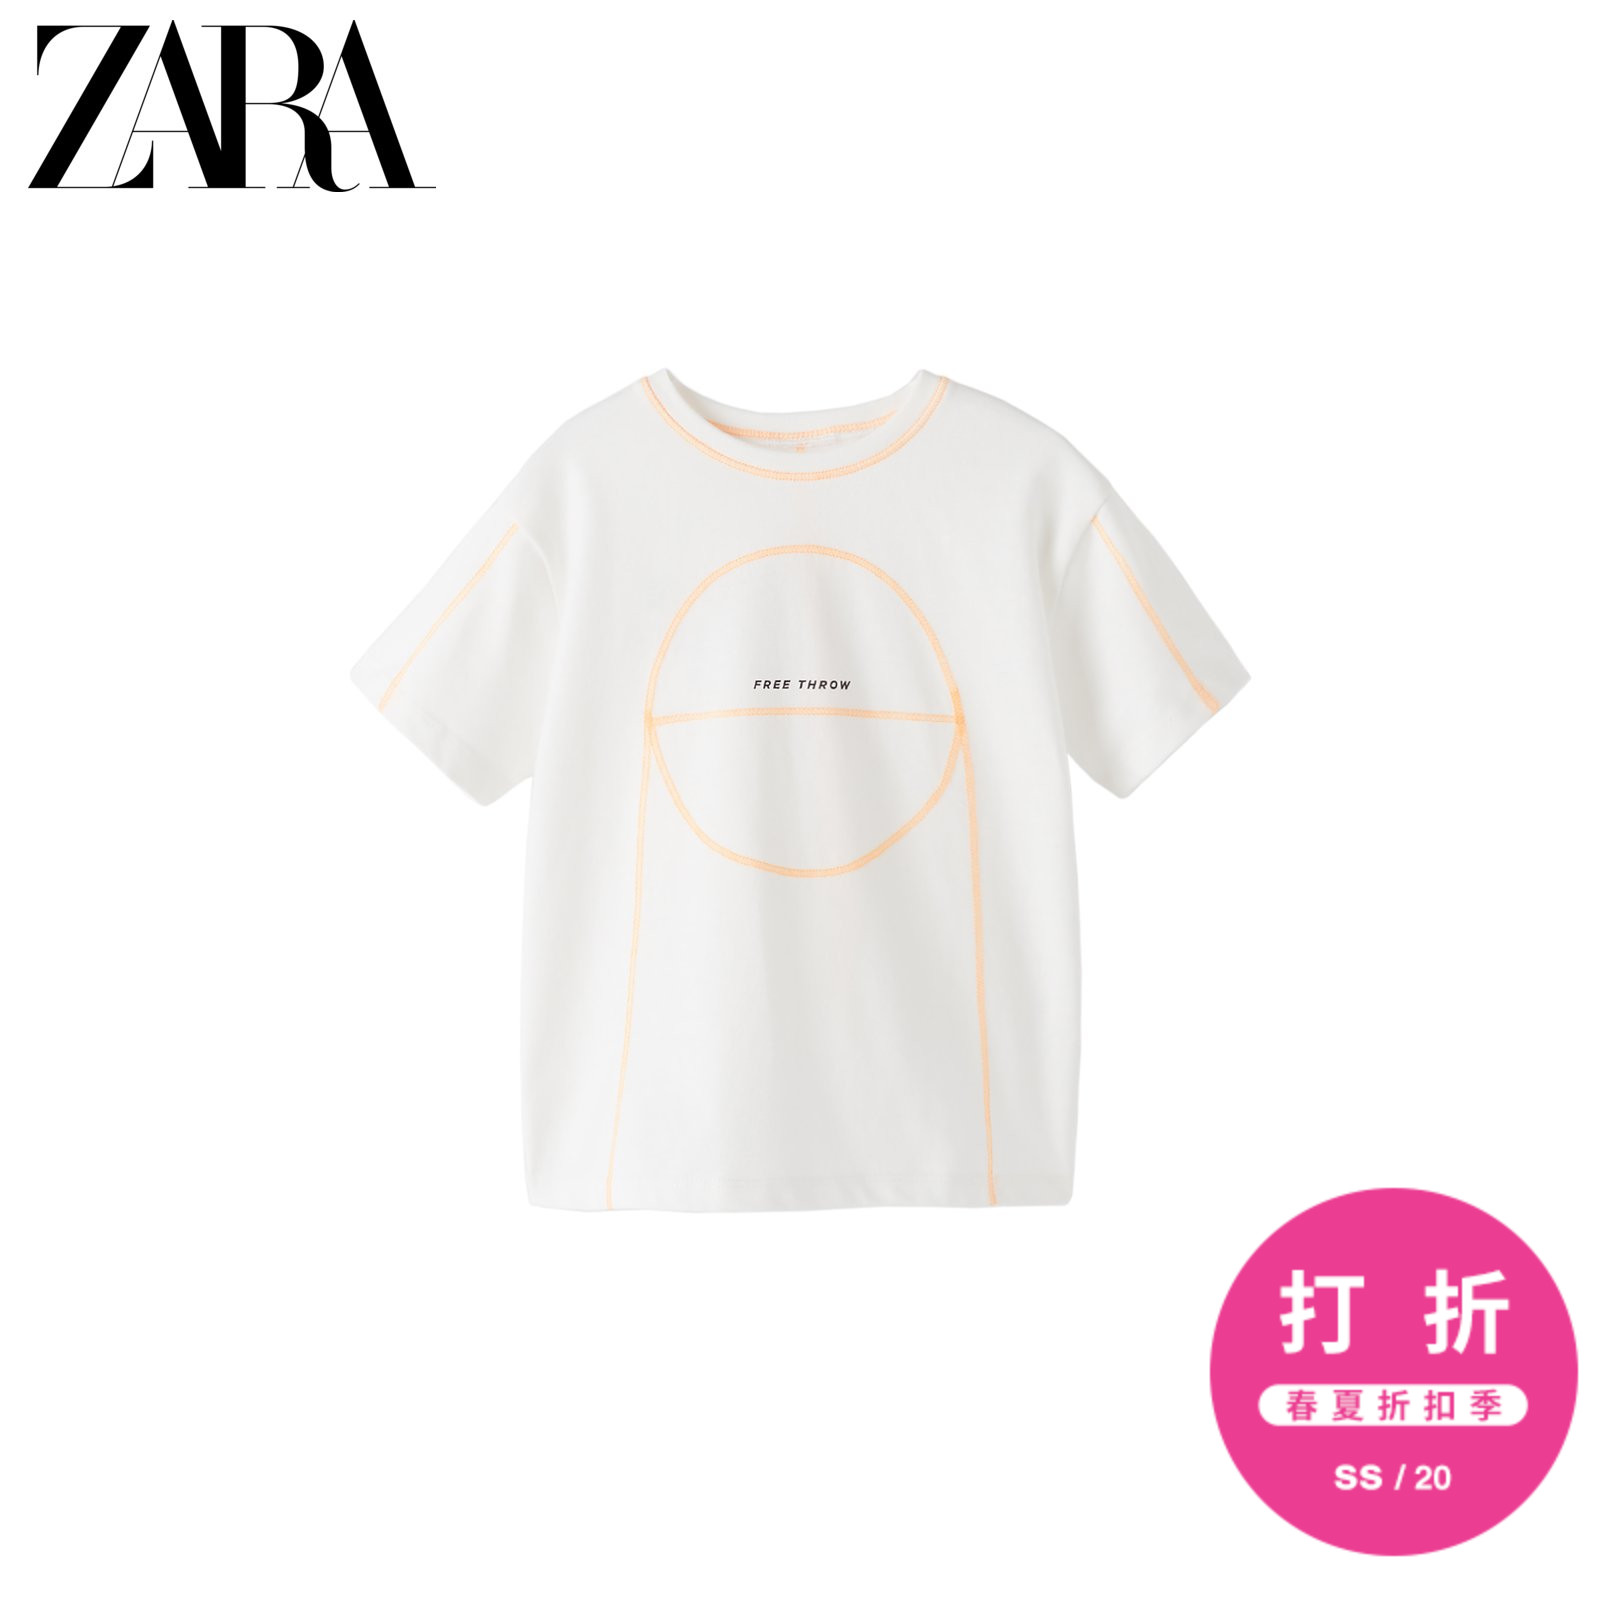 ZARA 新款 男婴幼童 春夏新品 运动型篮球T恤 03337596250,降价幅度43.5%